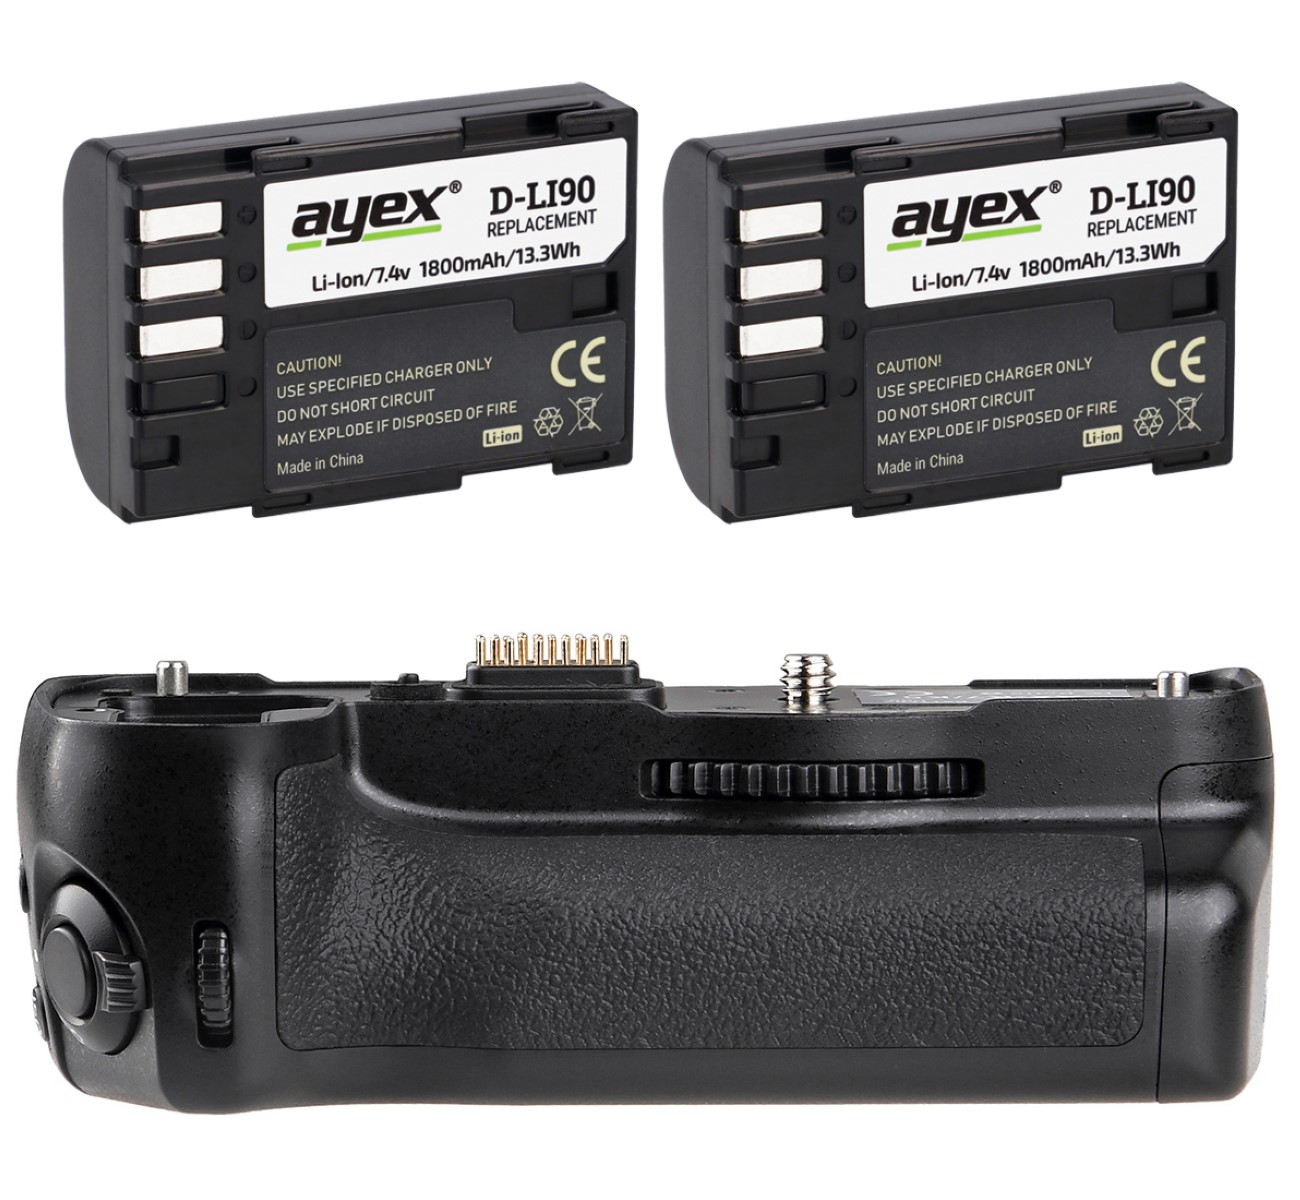 ayex Batteriegriff für Pentax K-7 K-5 K-5 II K-5 IIs ähnlich D-BG4 + 2 x ayex D-Li90 Akku